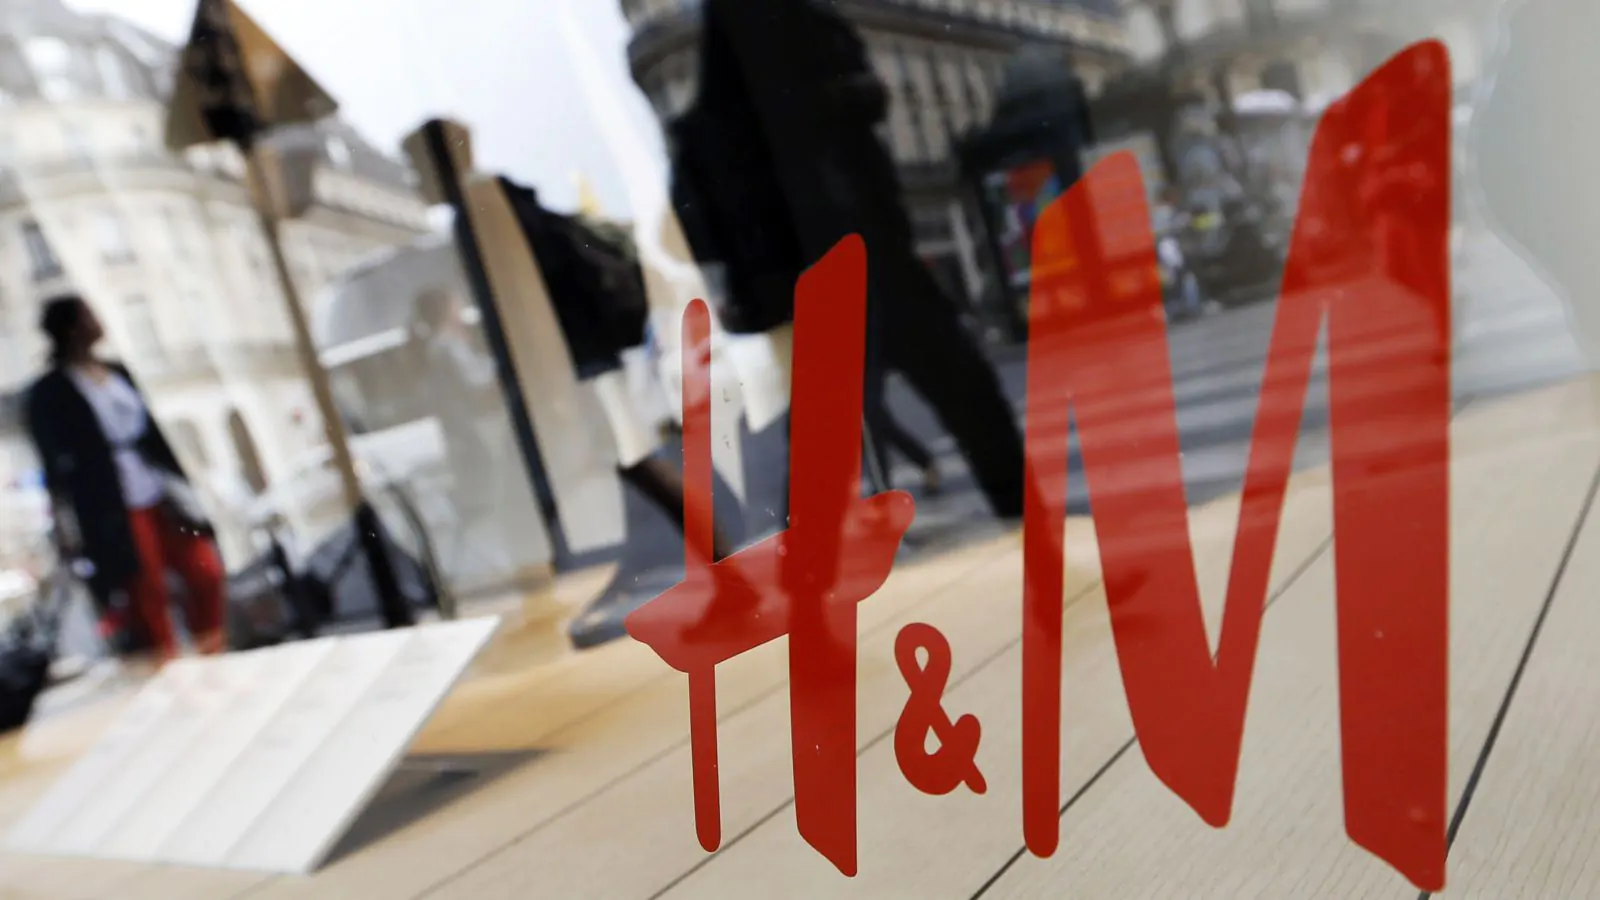 H&M assume nel nuovo punto vendita di Viterbo